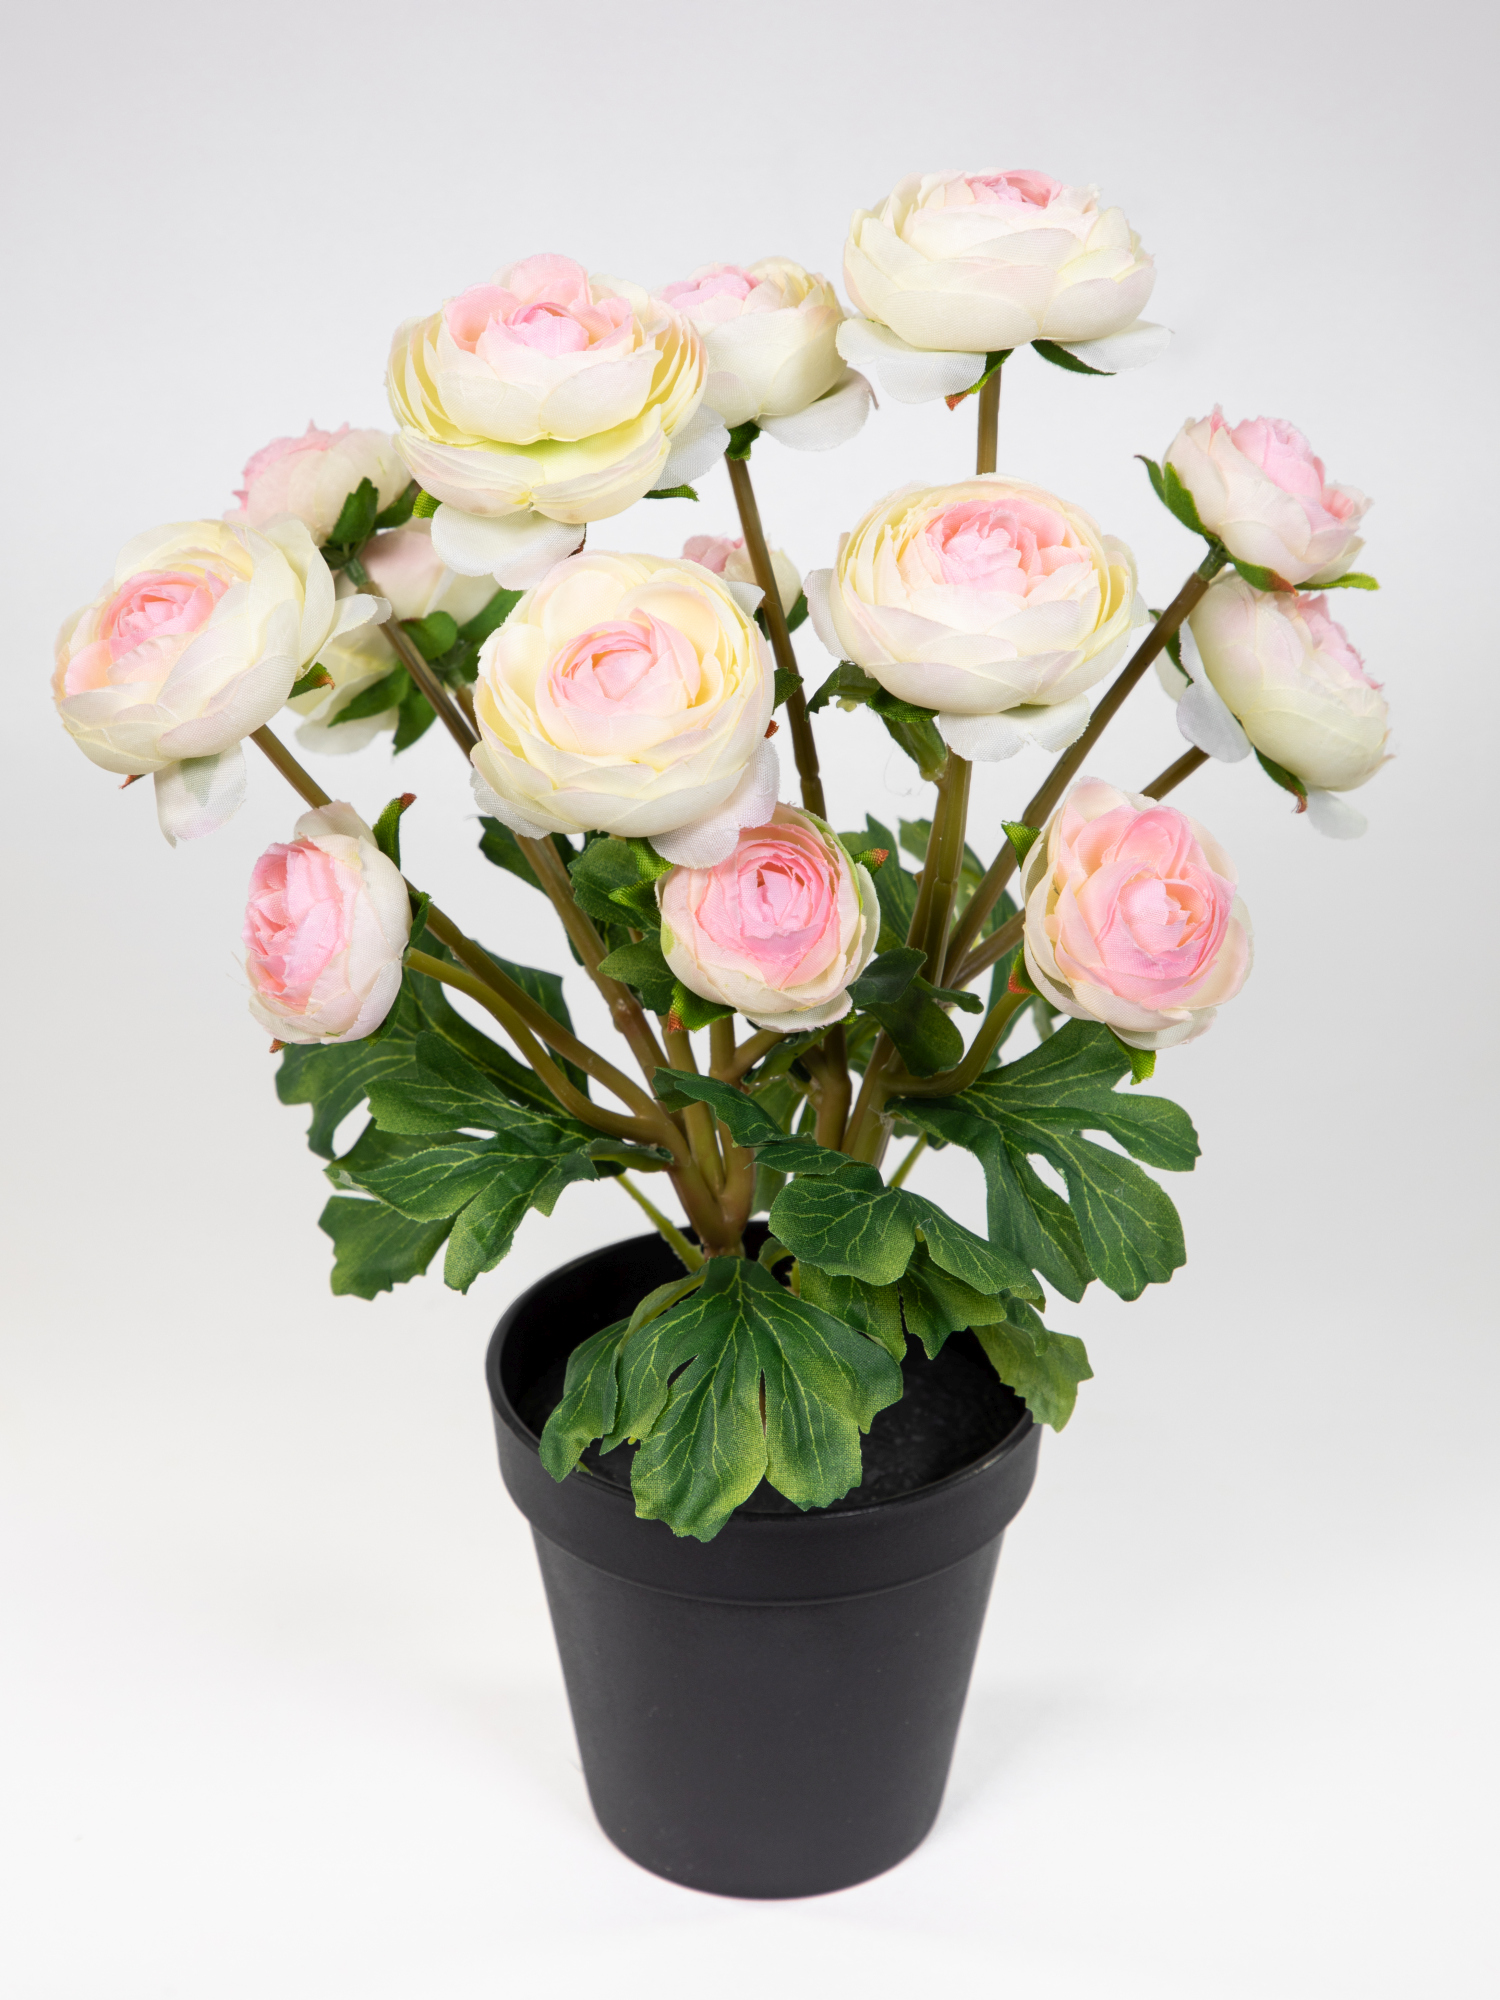 Ranunkelbusch Natural 32cm weiß-rosa im Topf DP Kunstpflanzen Kunstblumen künstliche Ranunkel Blumen